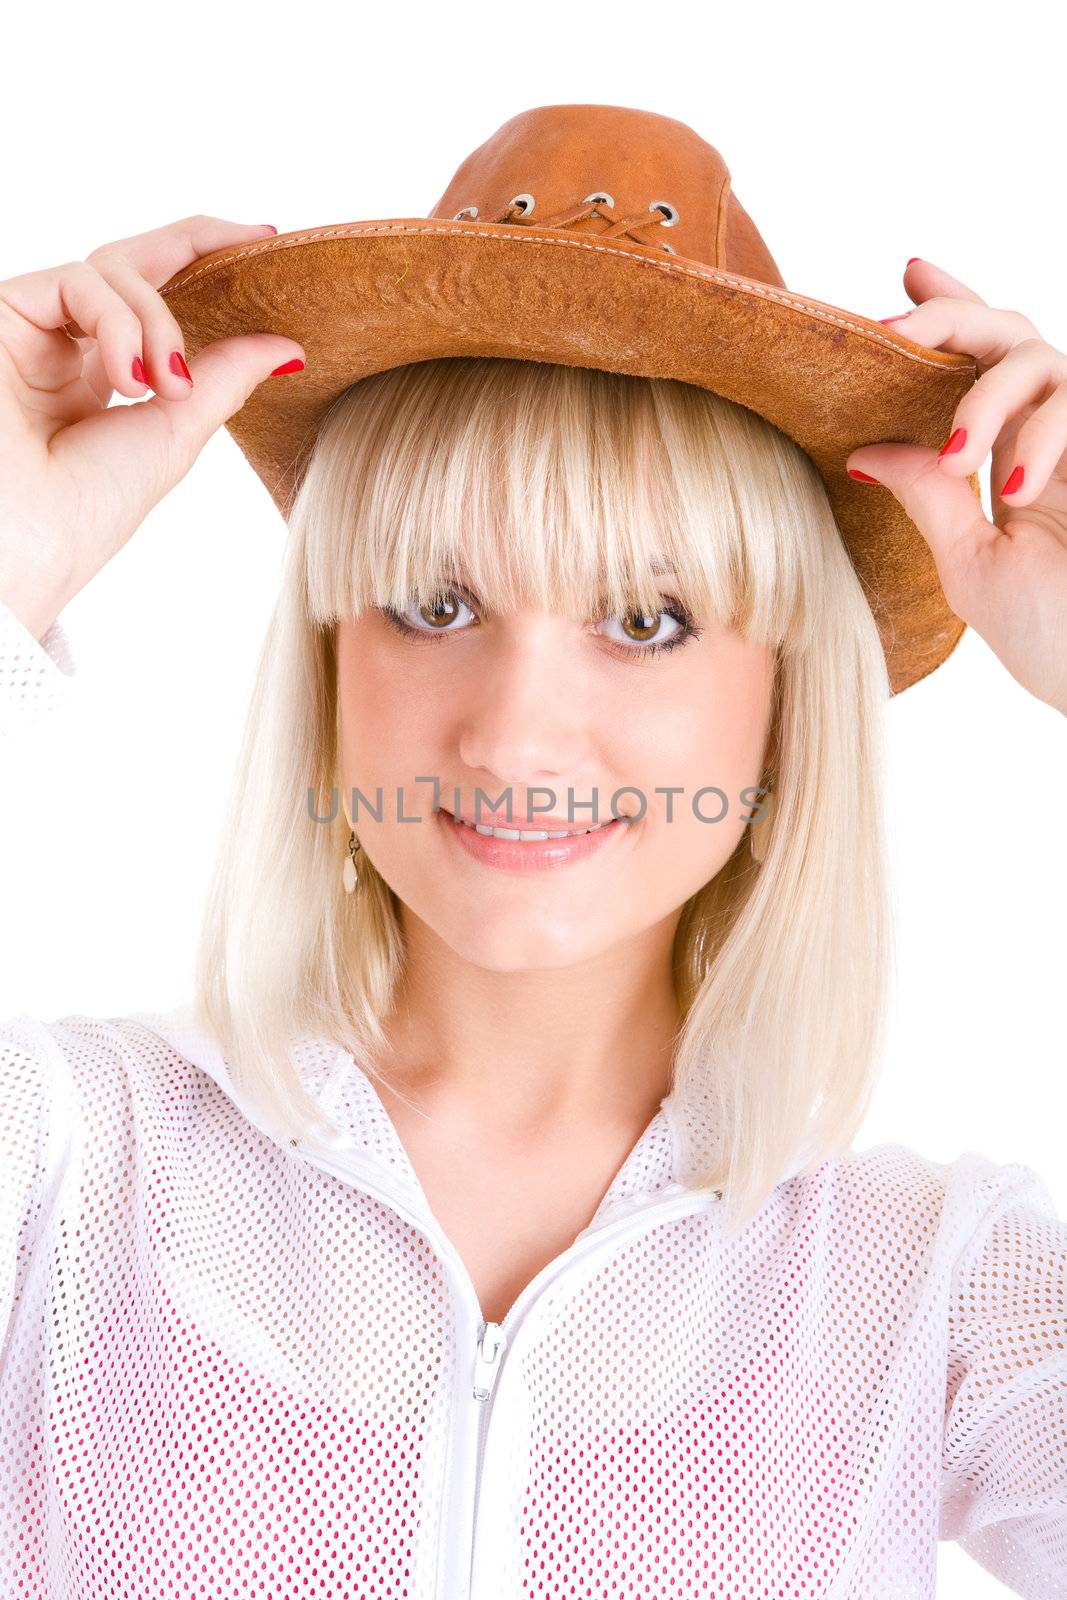 prettty beauty in cowboy hat by vsurkov